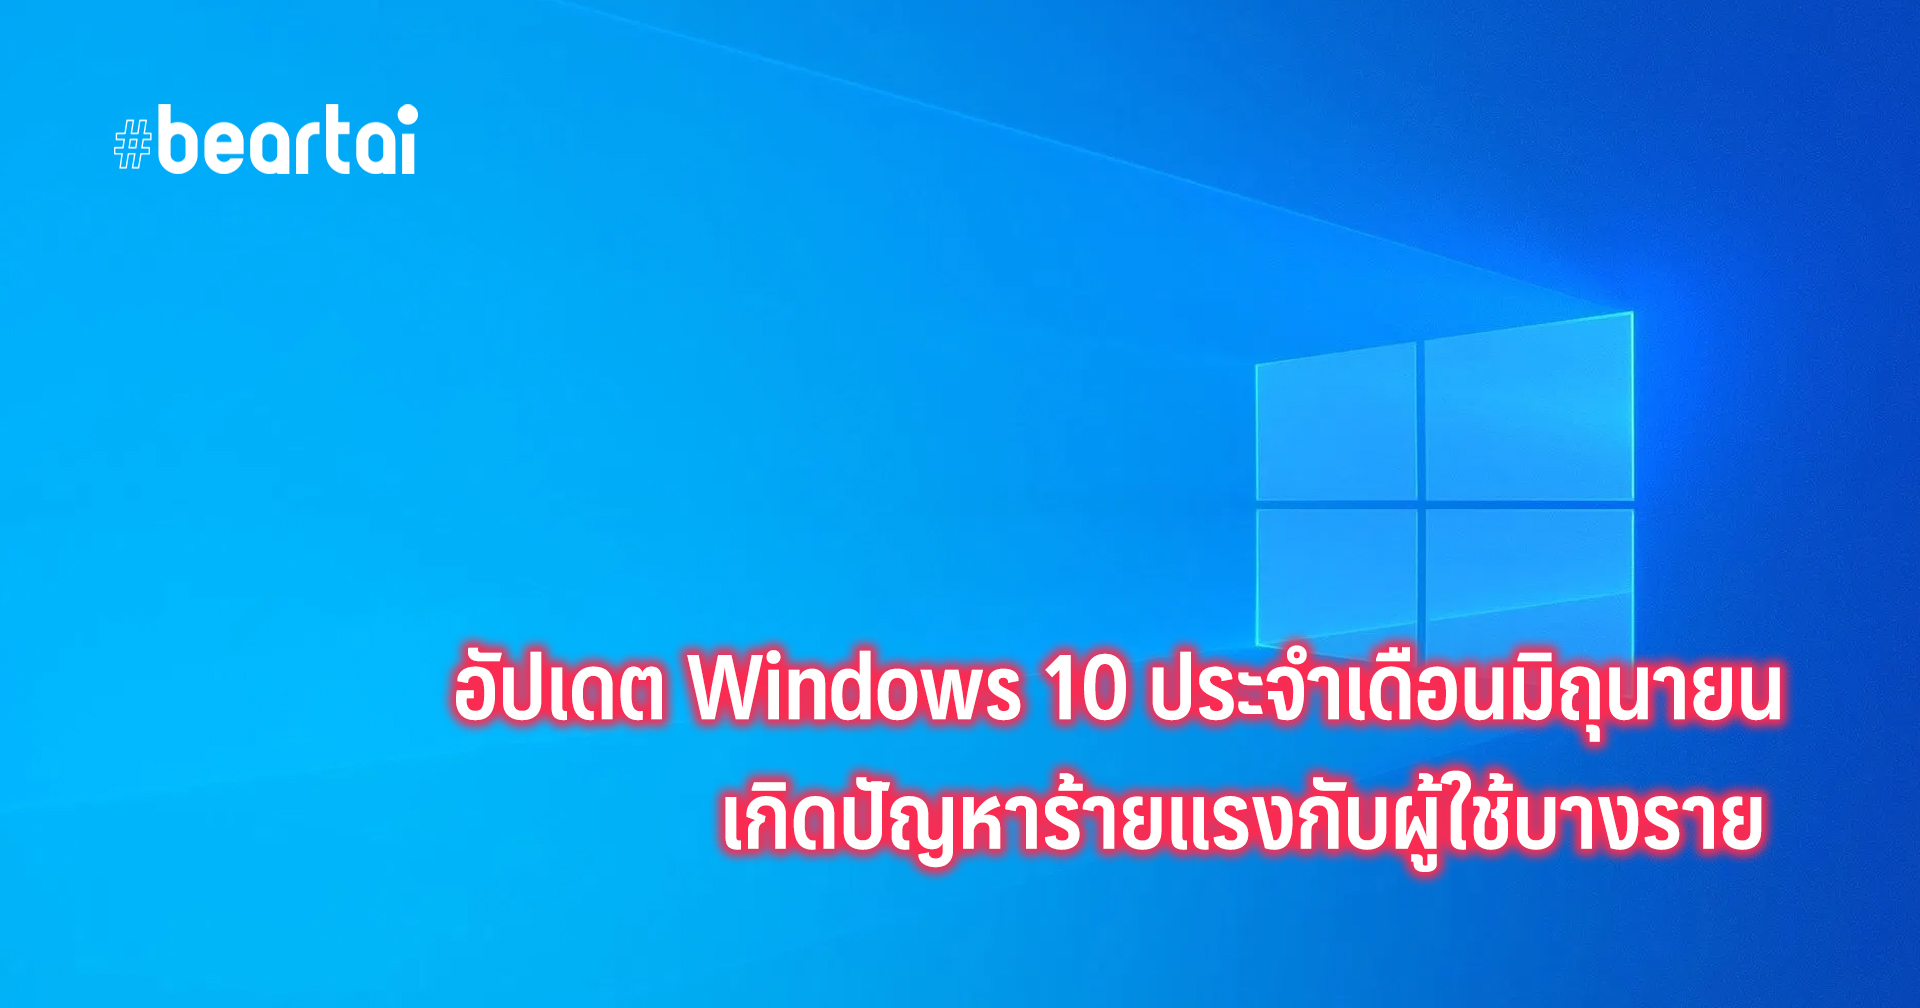 อัปเดต Windows 10 ประจำเดือนมิถุนายน  มีปัญหาร้ายแรงทำให้เครื่องรีสตาร์ตเอง และยังแก้ไขไม่ได้